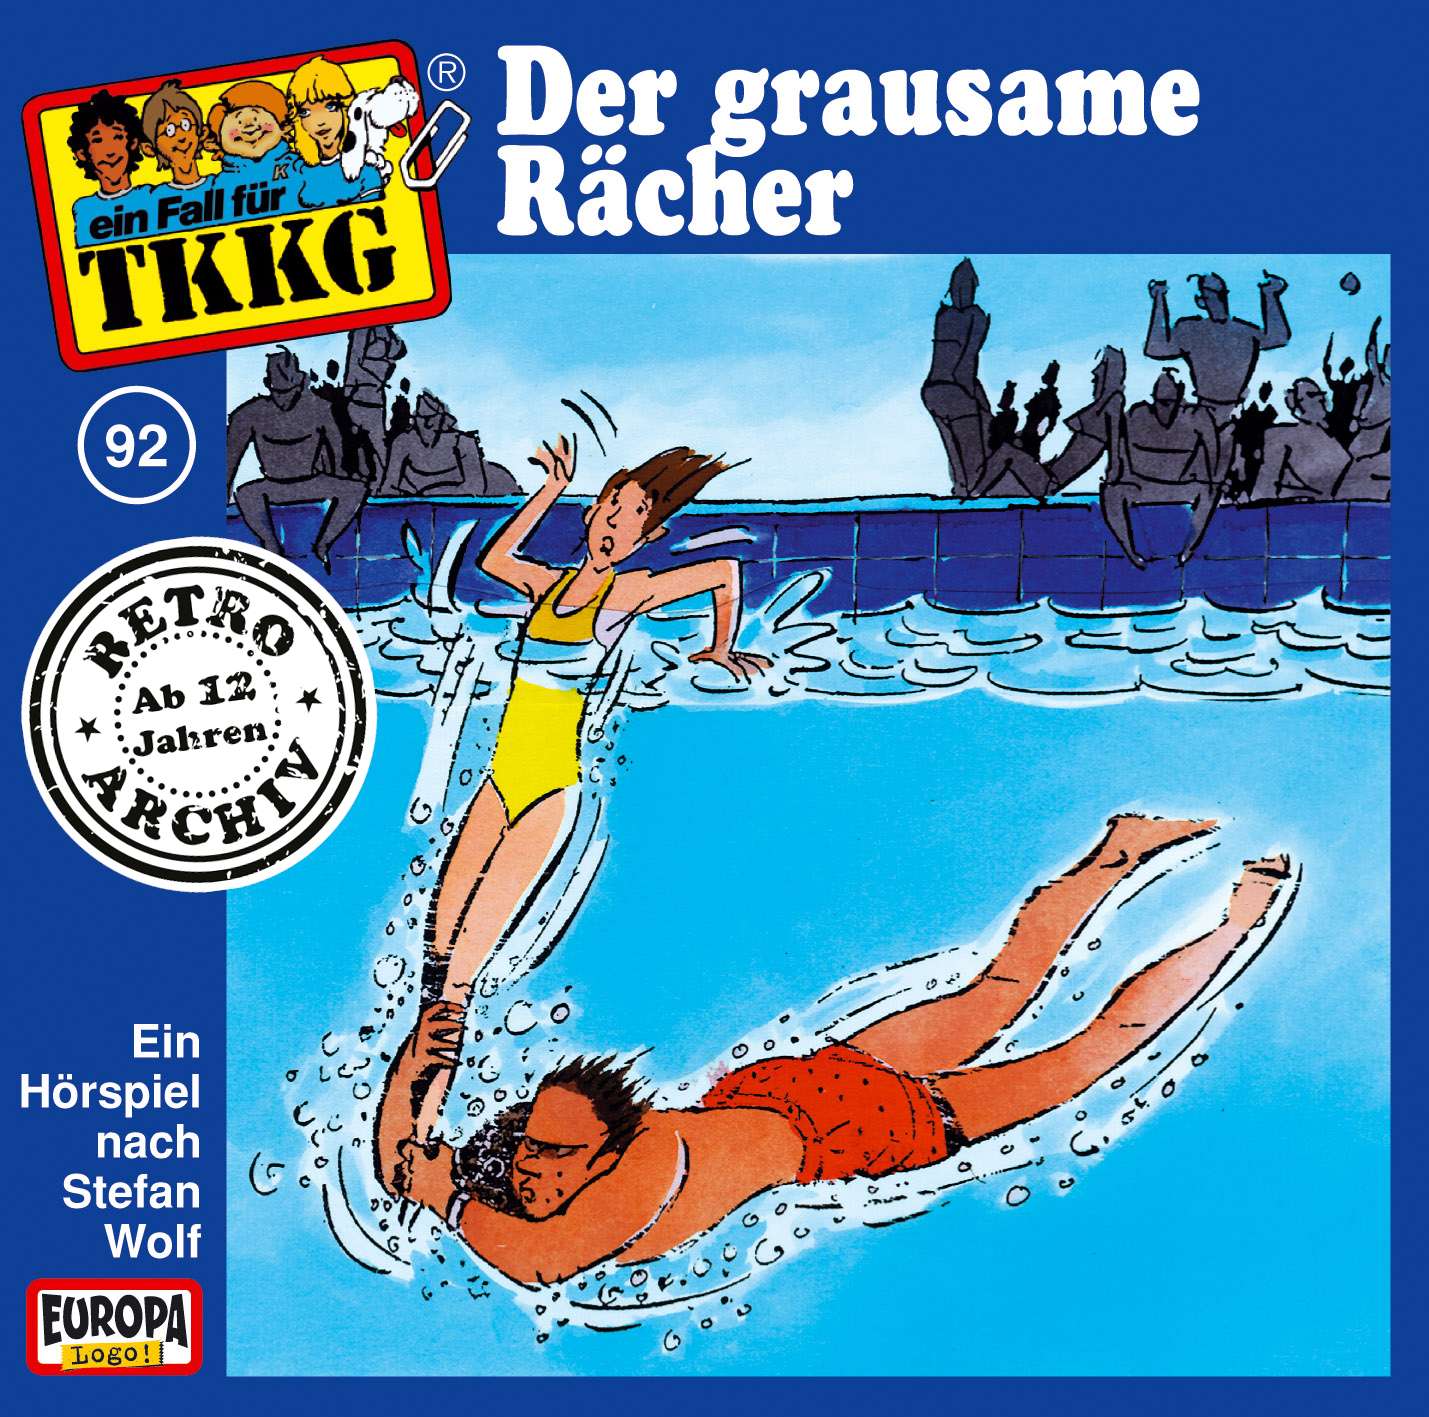 TKKG Retro-Archiv - Der grausame Rächer